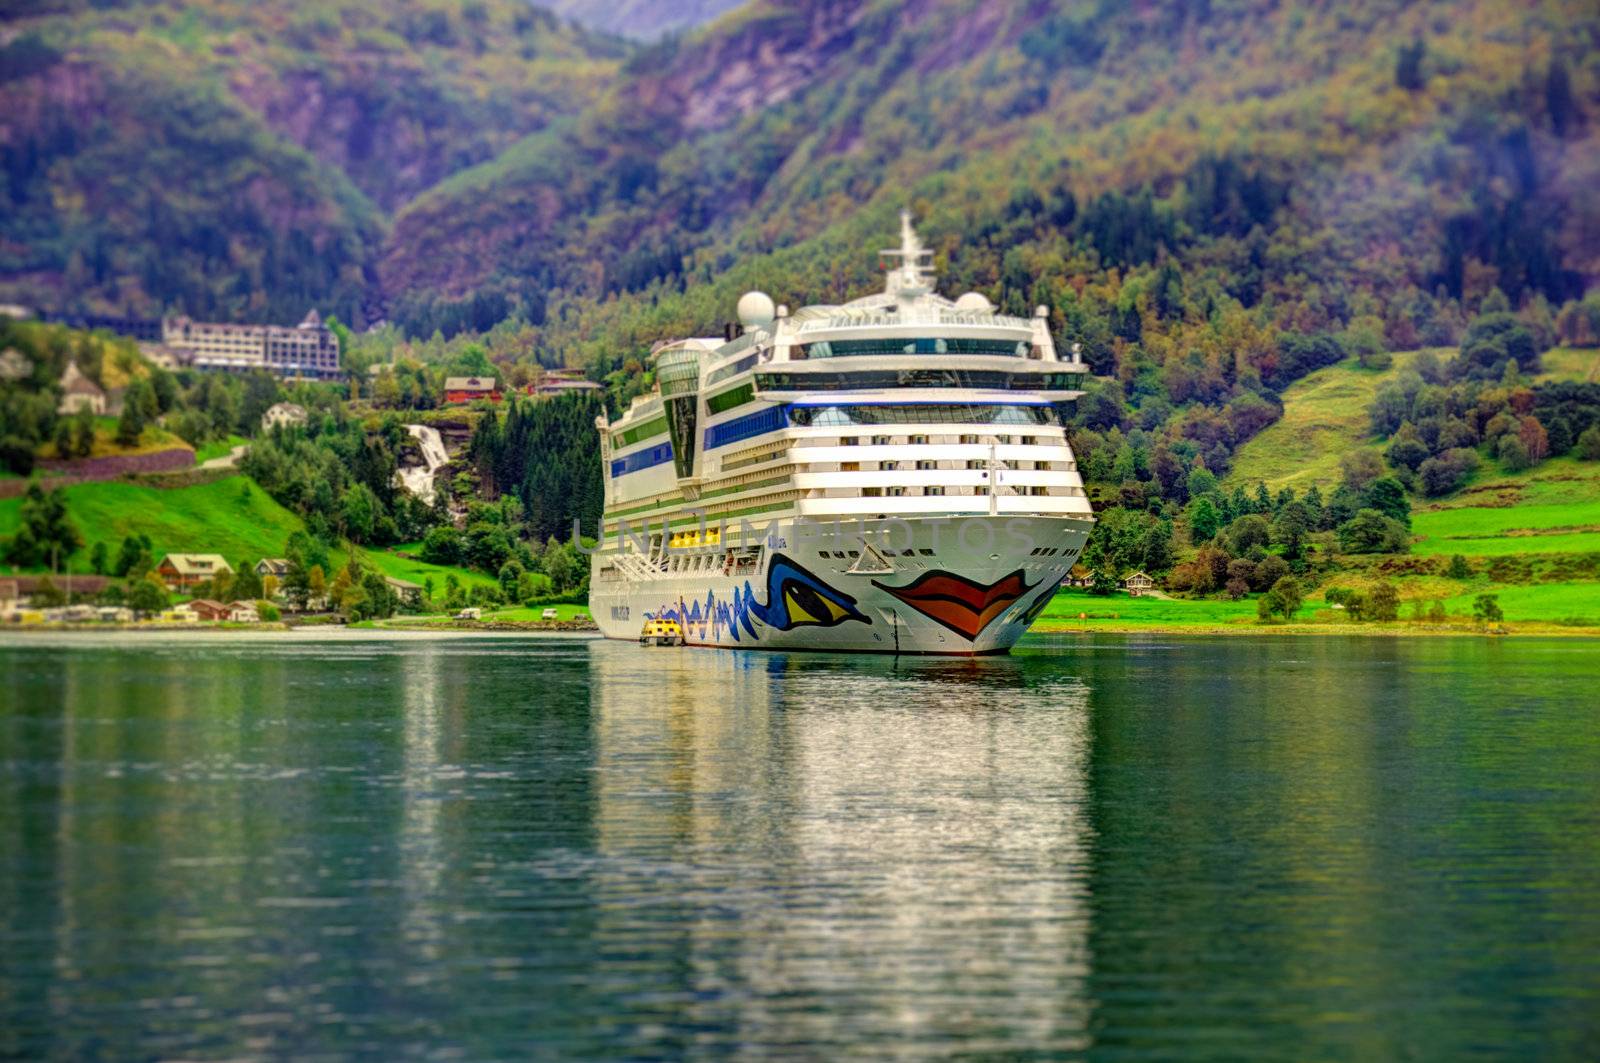 Cruise ship in Geiranger fjord by Nanisimova